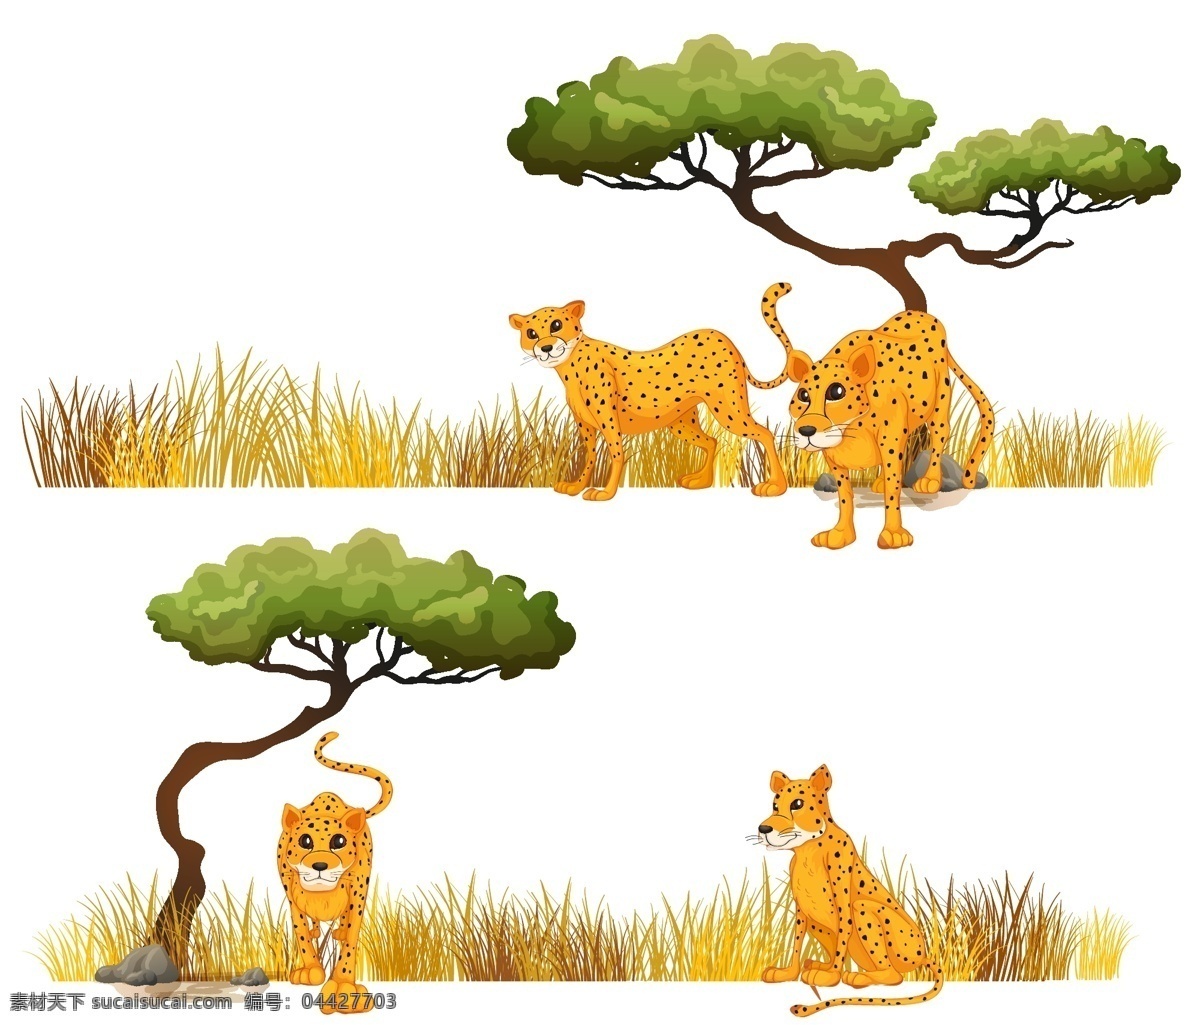 卡通动物插画 头像 表情 野生动物 手绘动物 动物 素描 手绘 卡通动物园 动物园 卡通 可爱动物 小动物 动物贴纸 生物世界